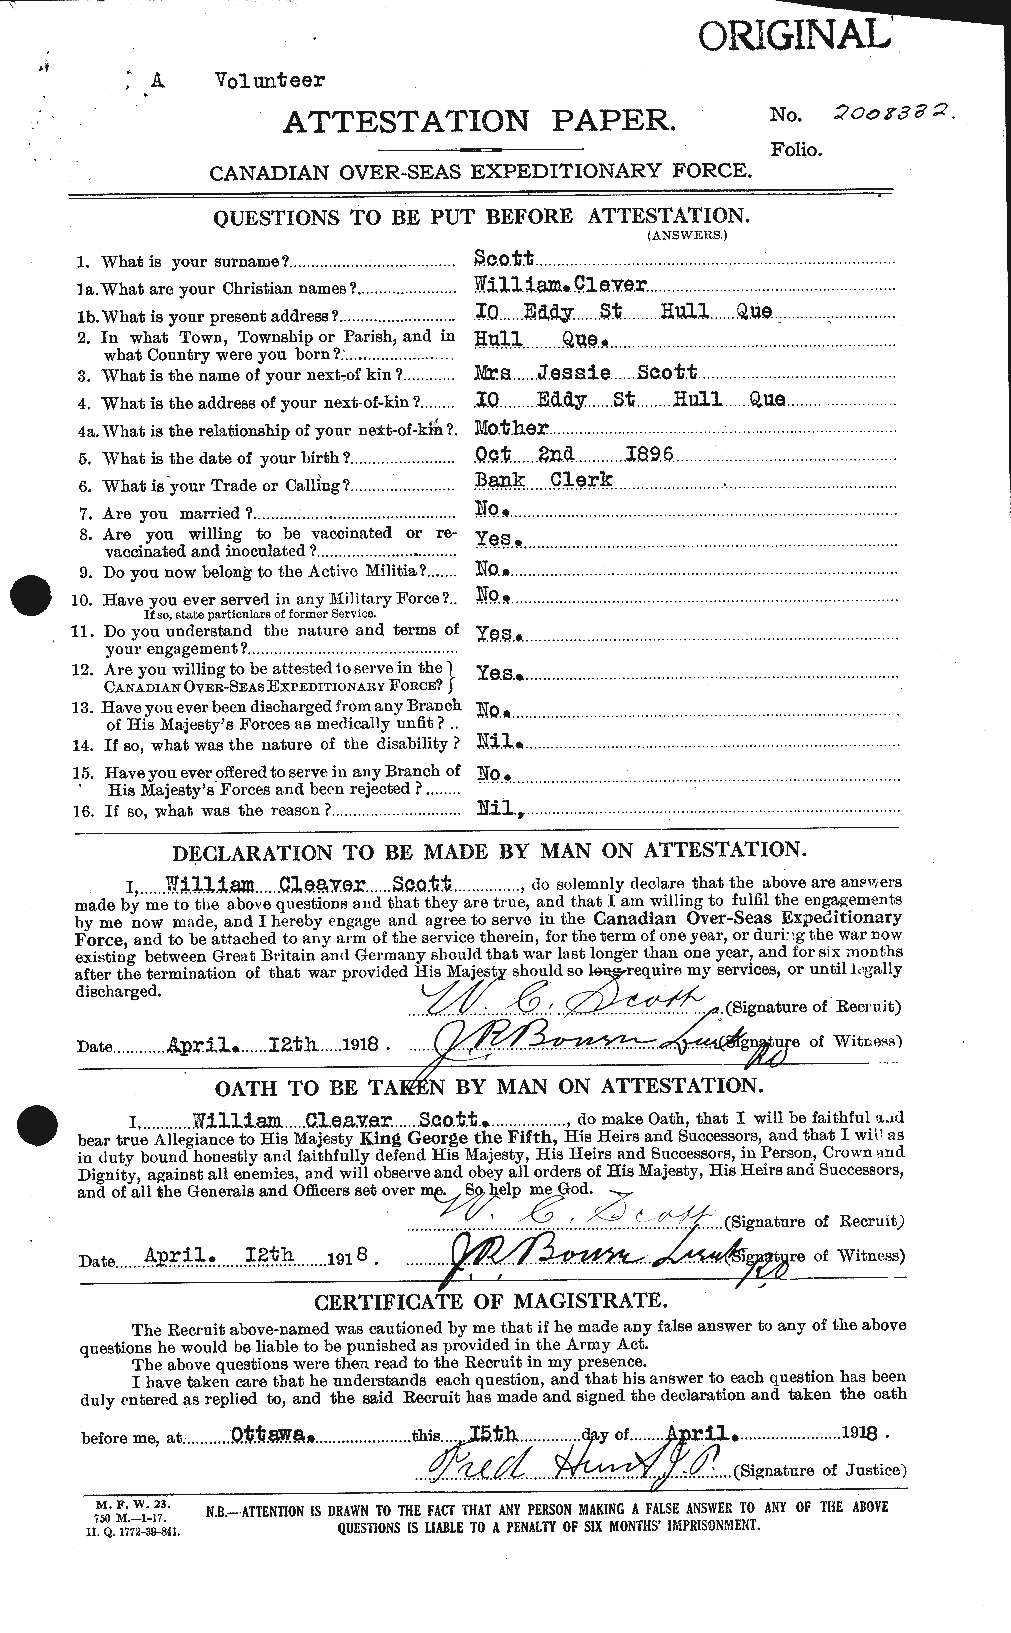 Dossiers du Personnel de la Première Guerre mondiale - CEC 087038a